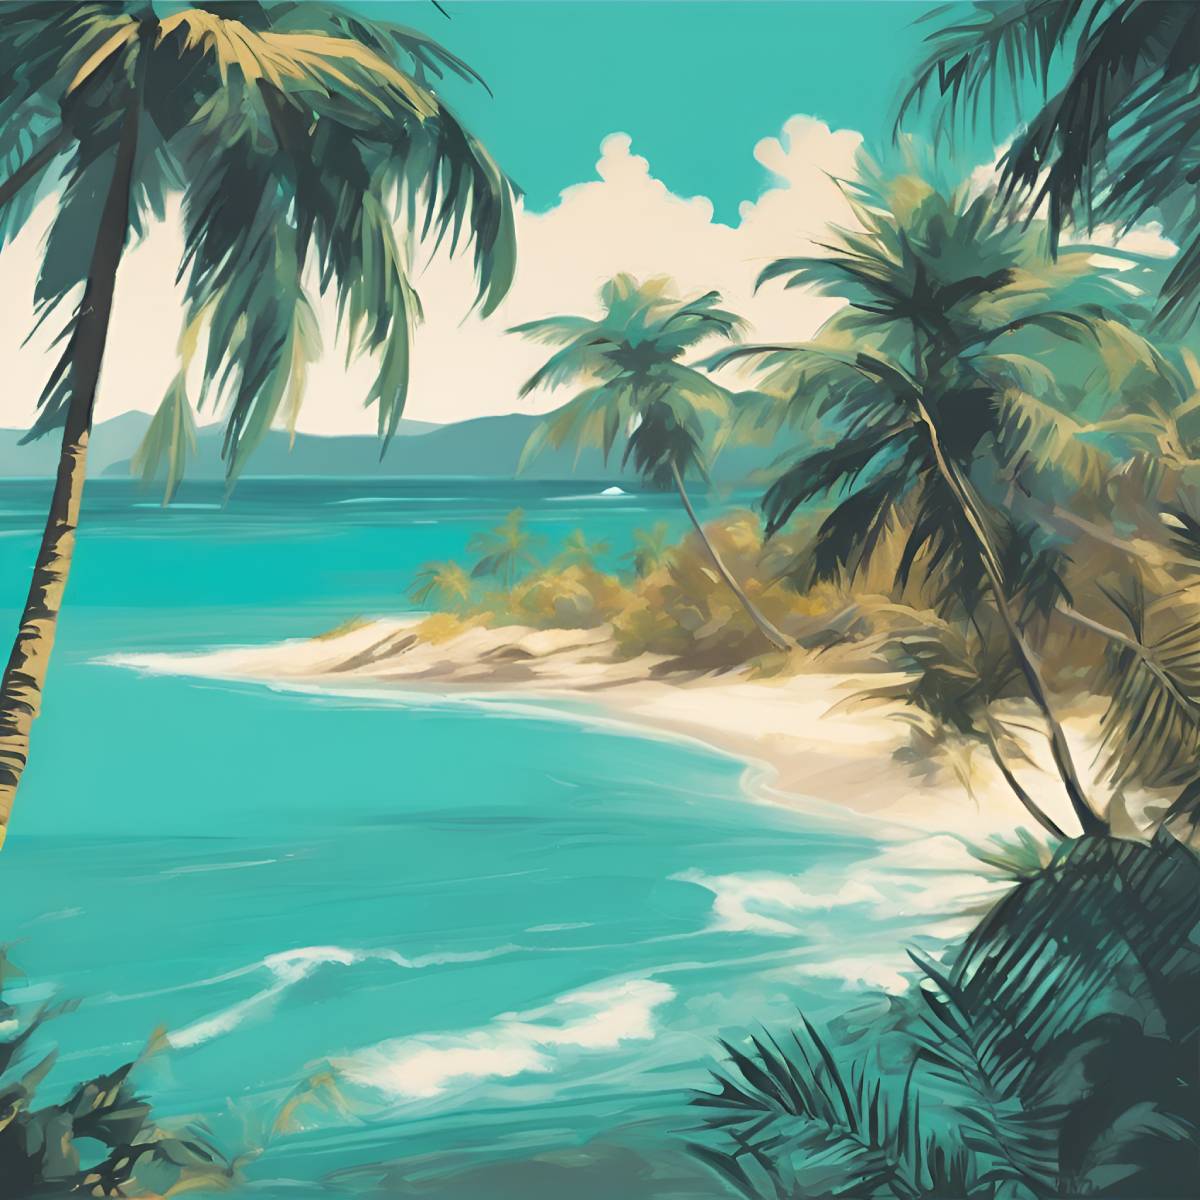 diamonds-wizard-diamond-painting-kit-Landscape-Beach-Tropical-Paradise-original.jpg